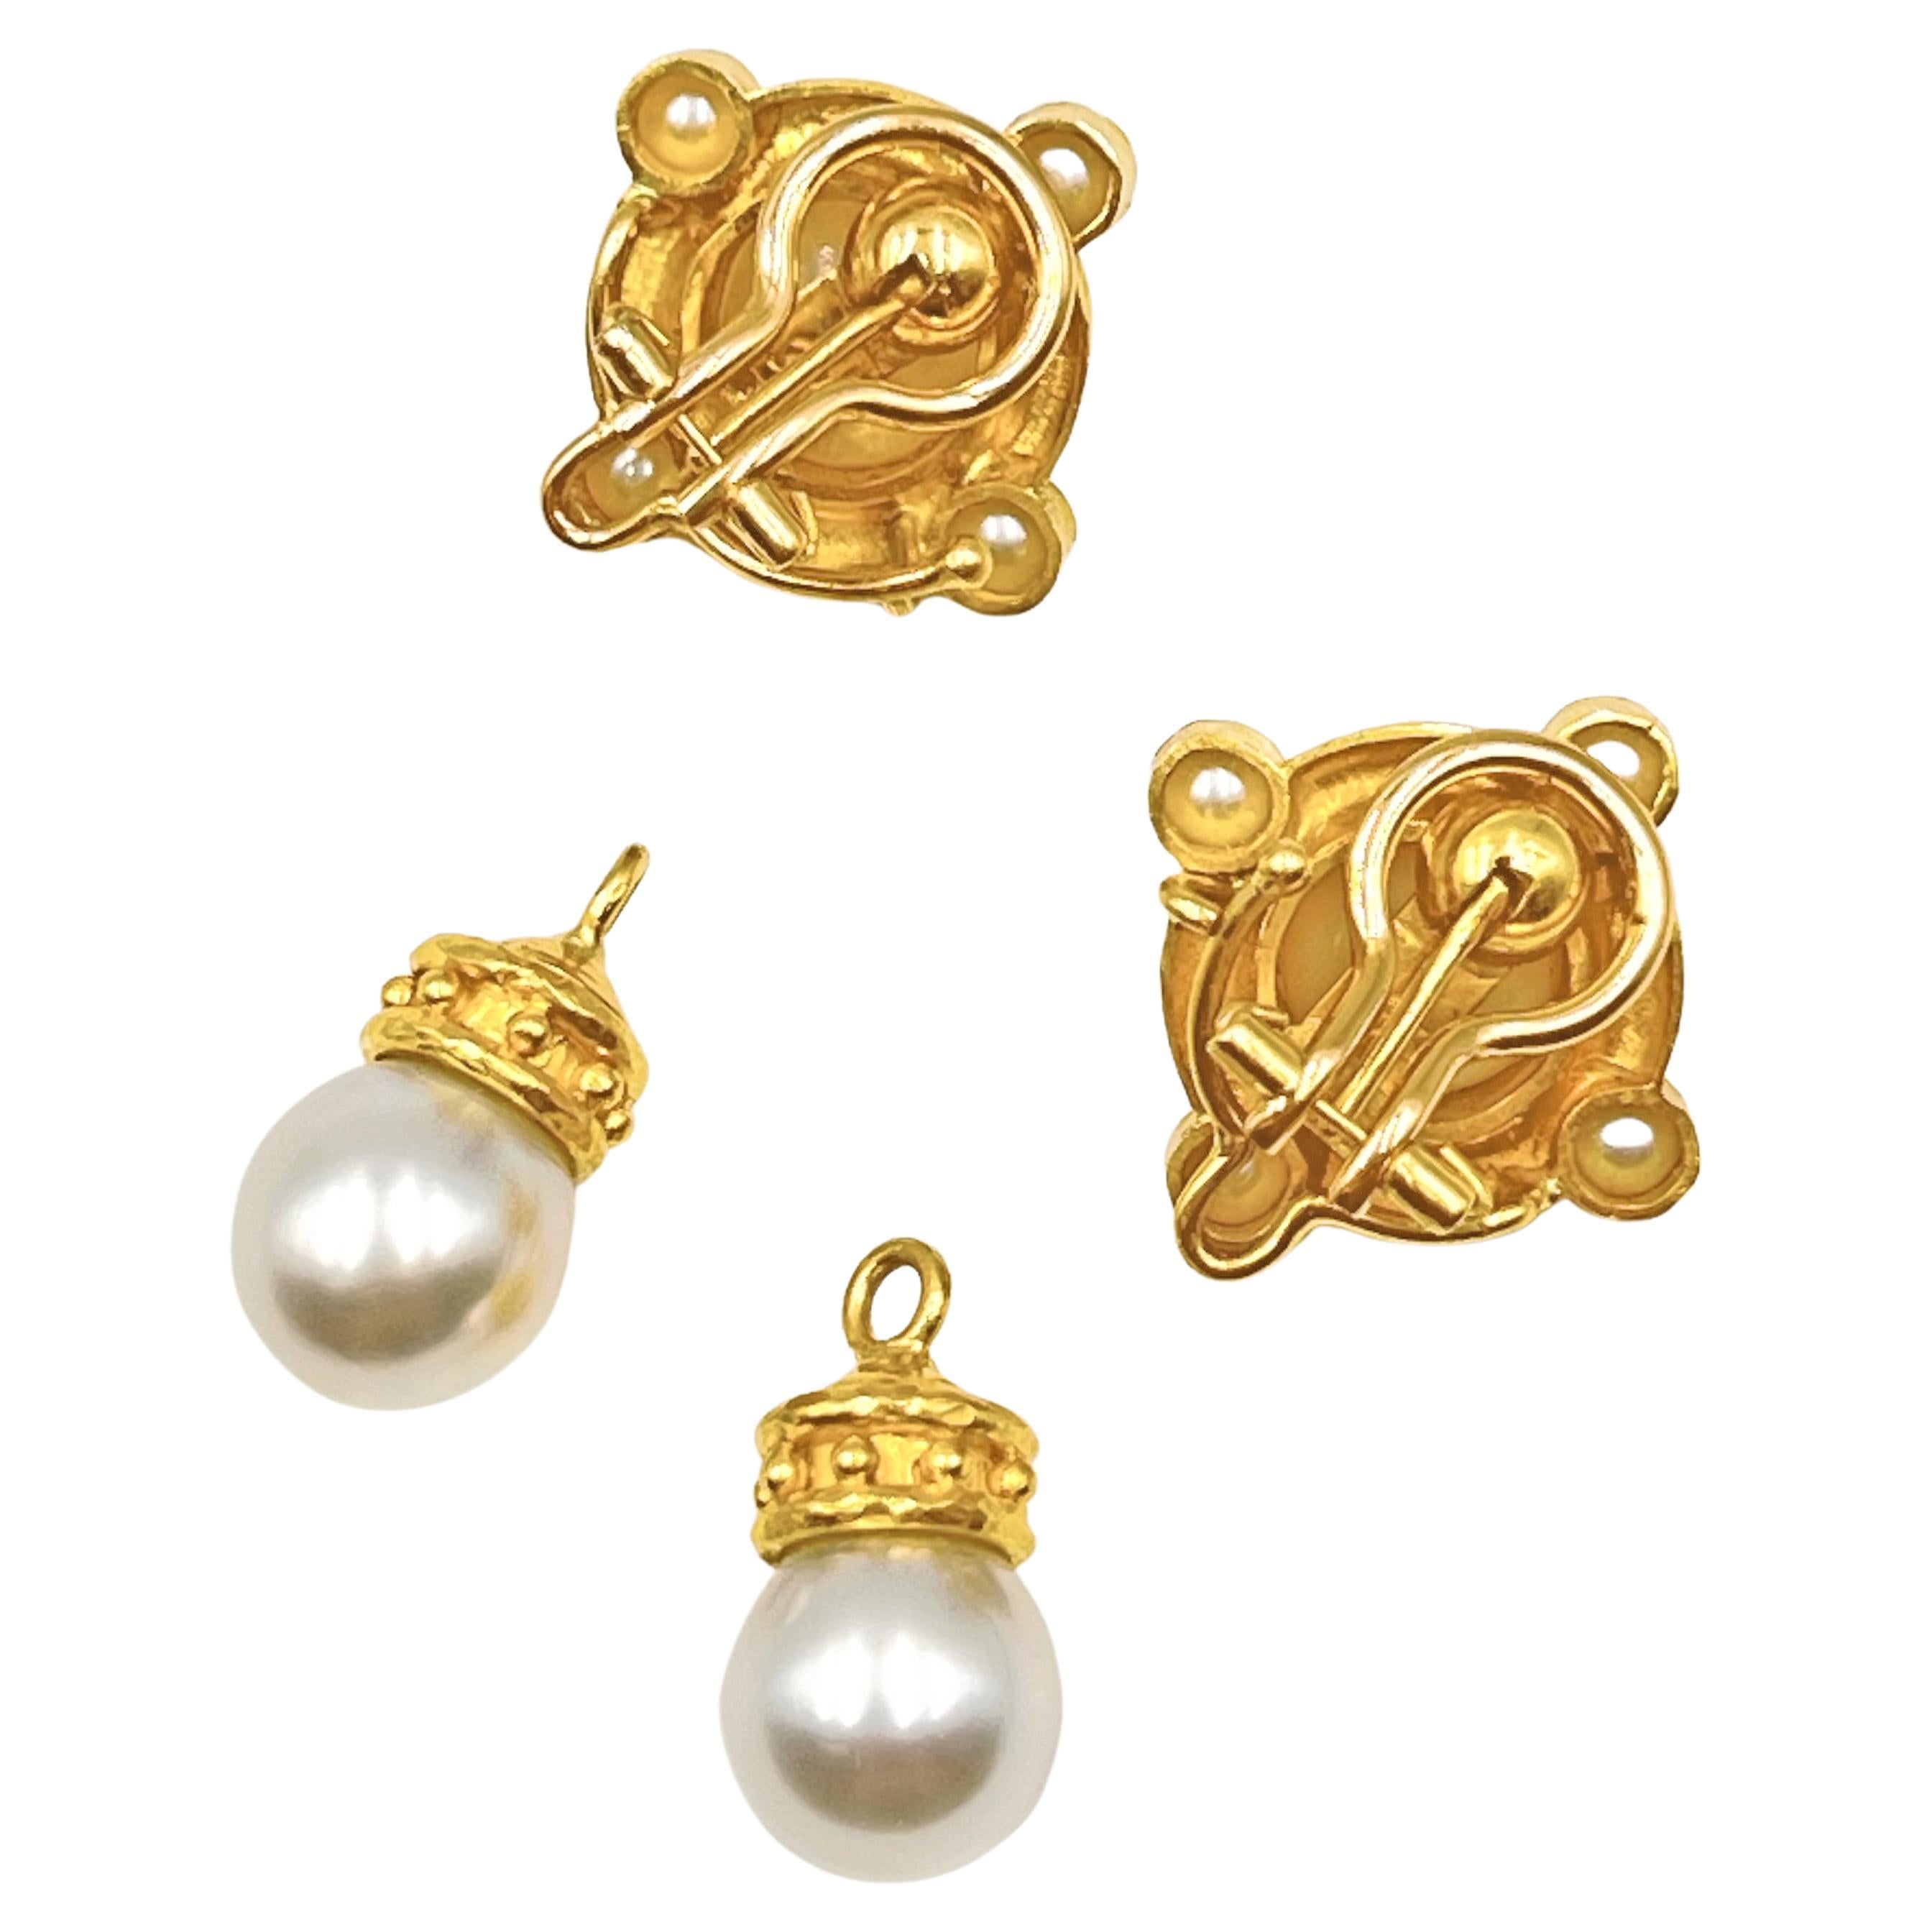 Bead Elizabeth Locke 19k Gold South Sea Pearl Drop Earrings